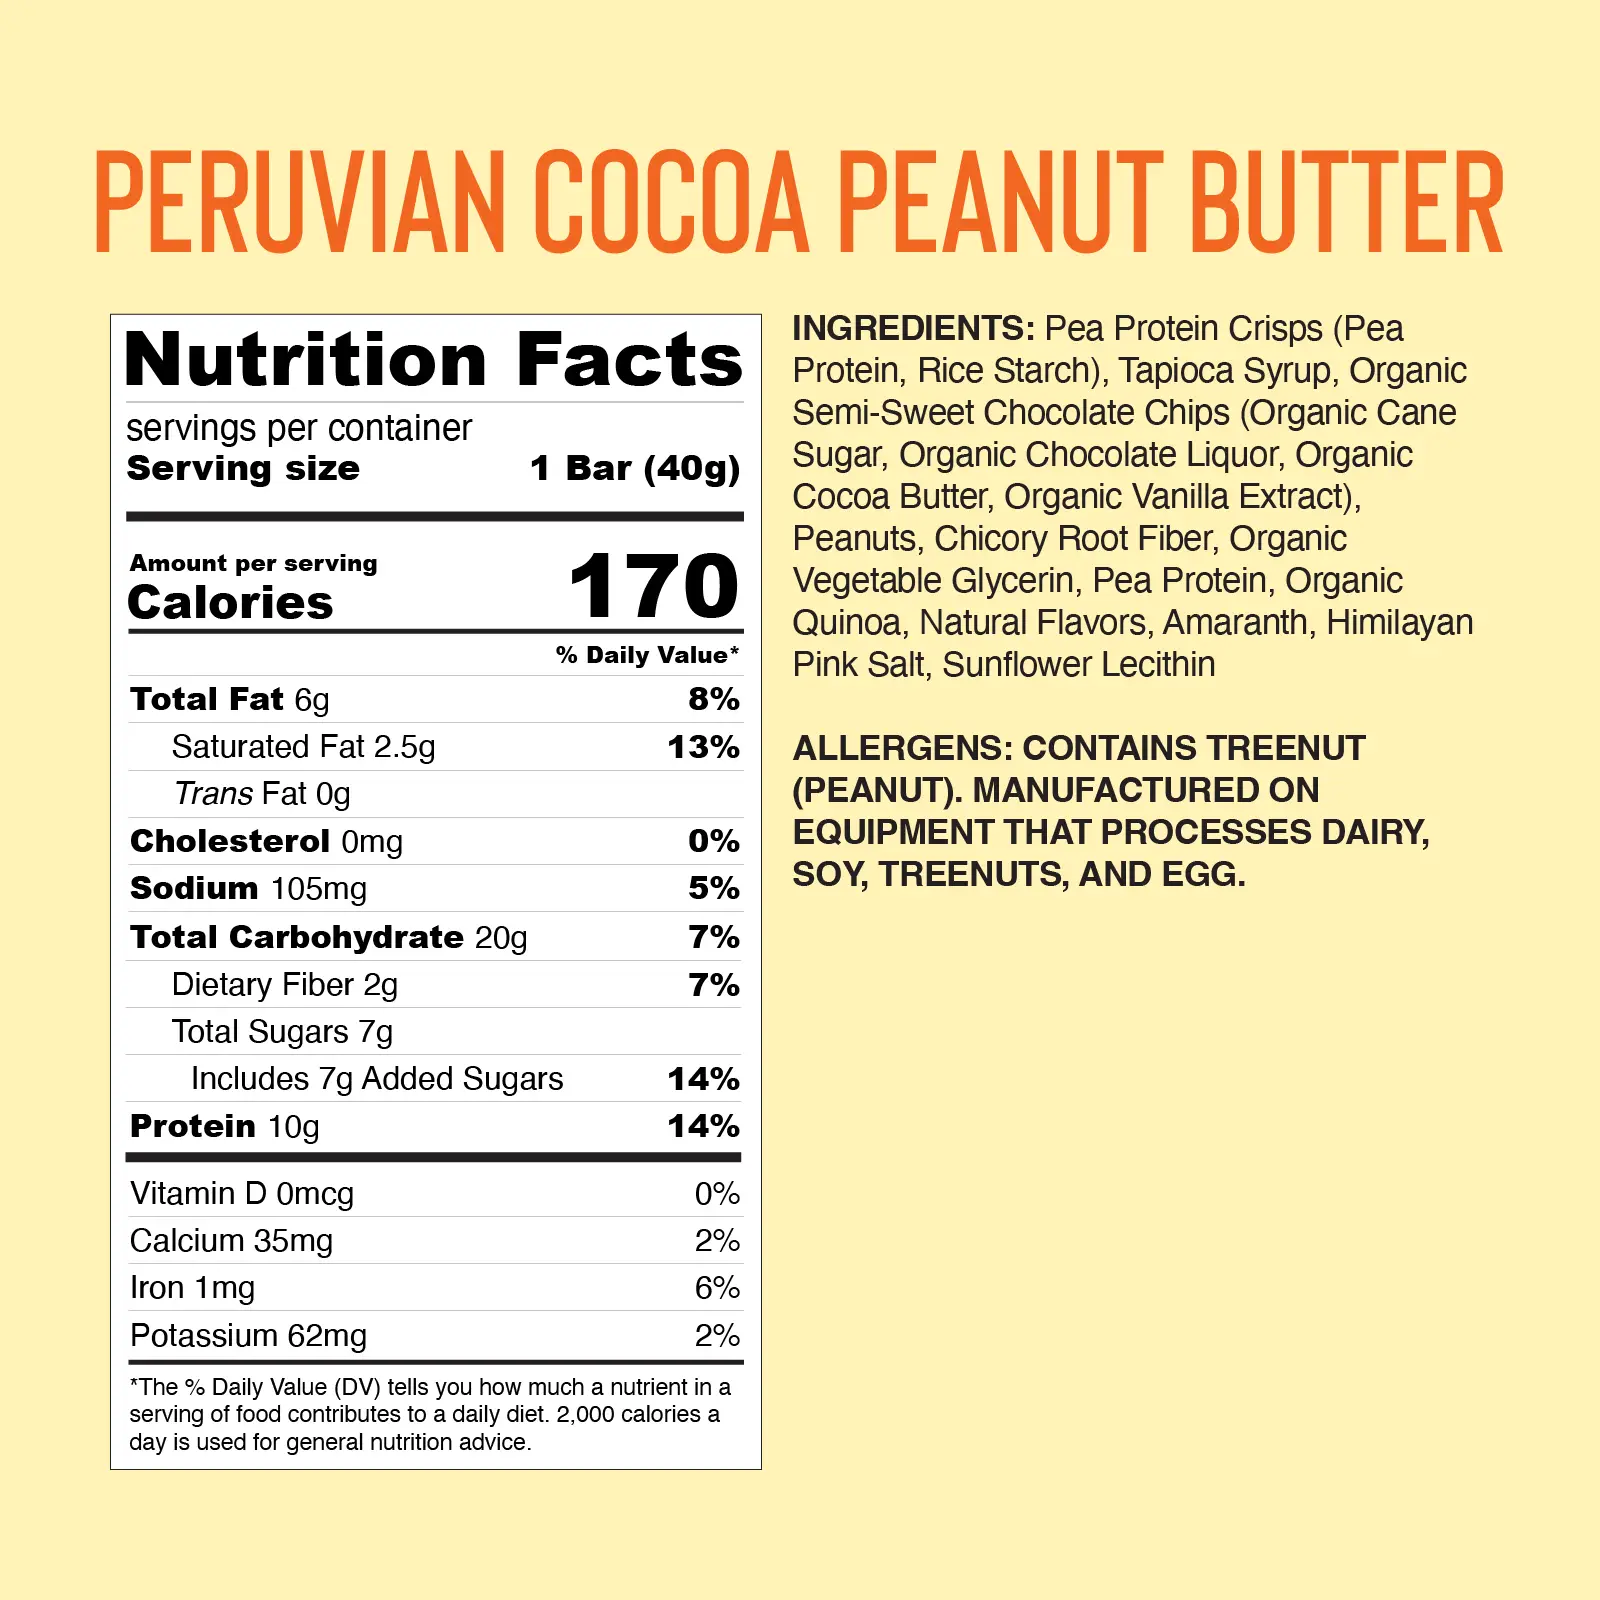 Peruvian Cocoa Peanut Butter Delivery